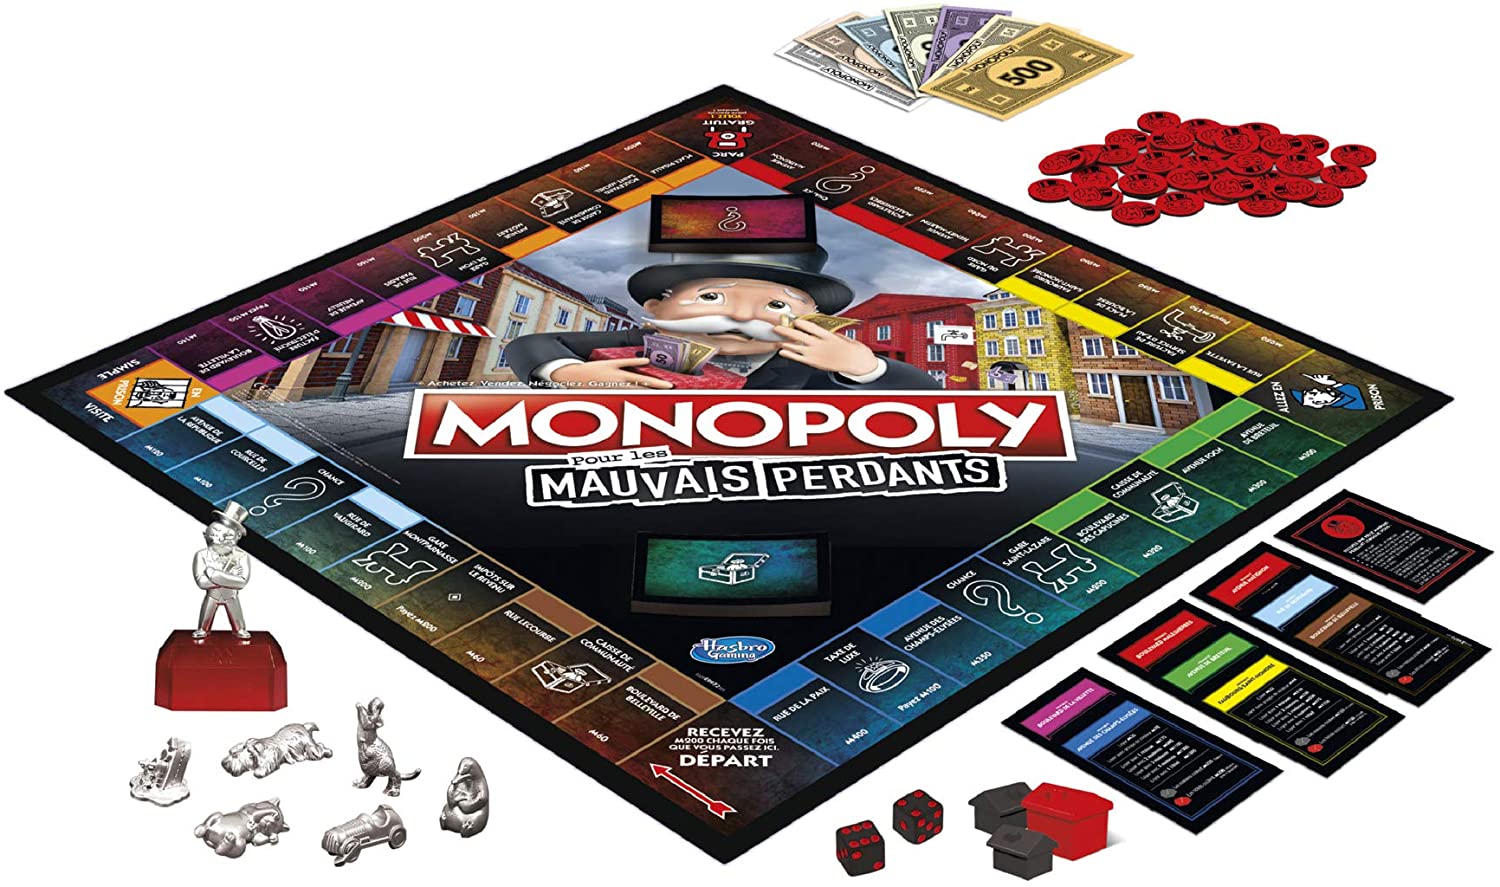 Monopoly Edition tricheurs : quelles sont les règles ? 